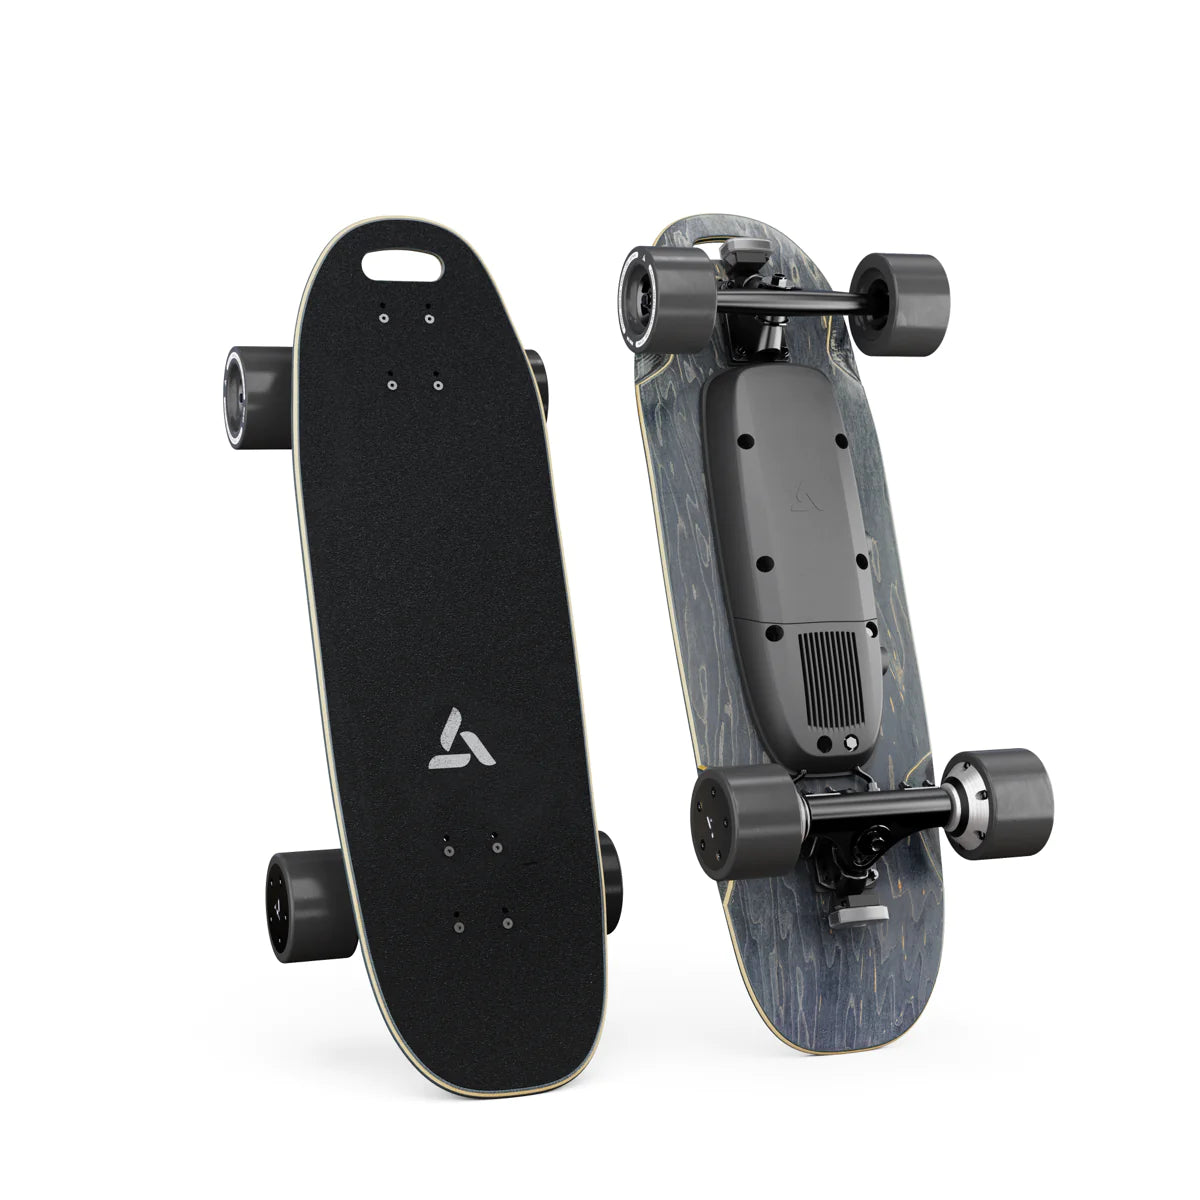 Skateboard Électrique - Longboard Électrique - Planche à roulettes